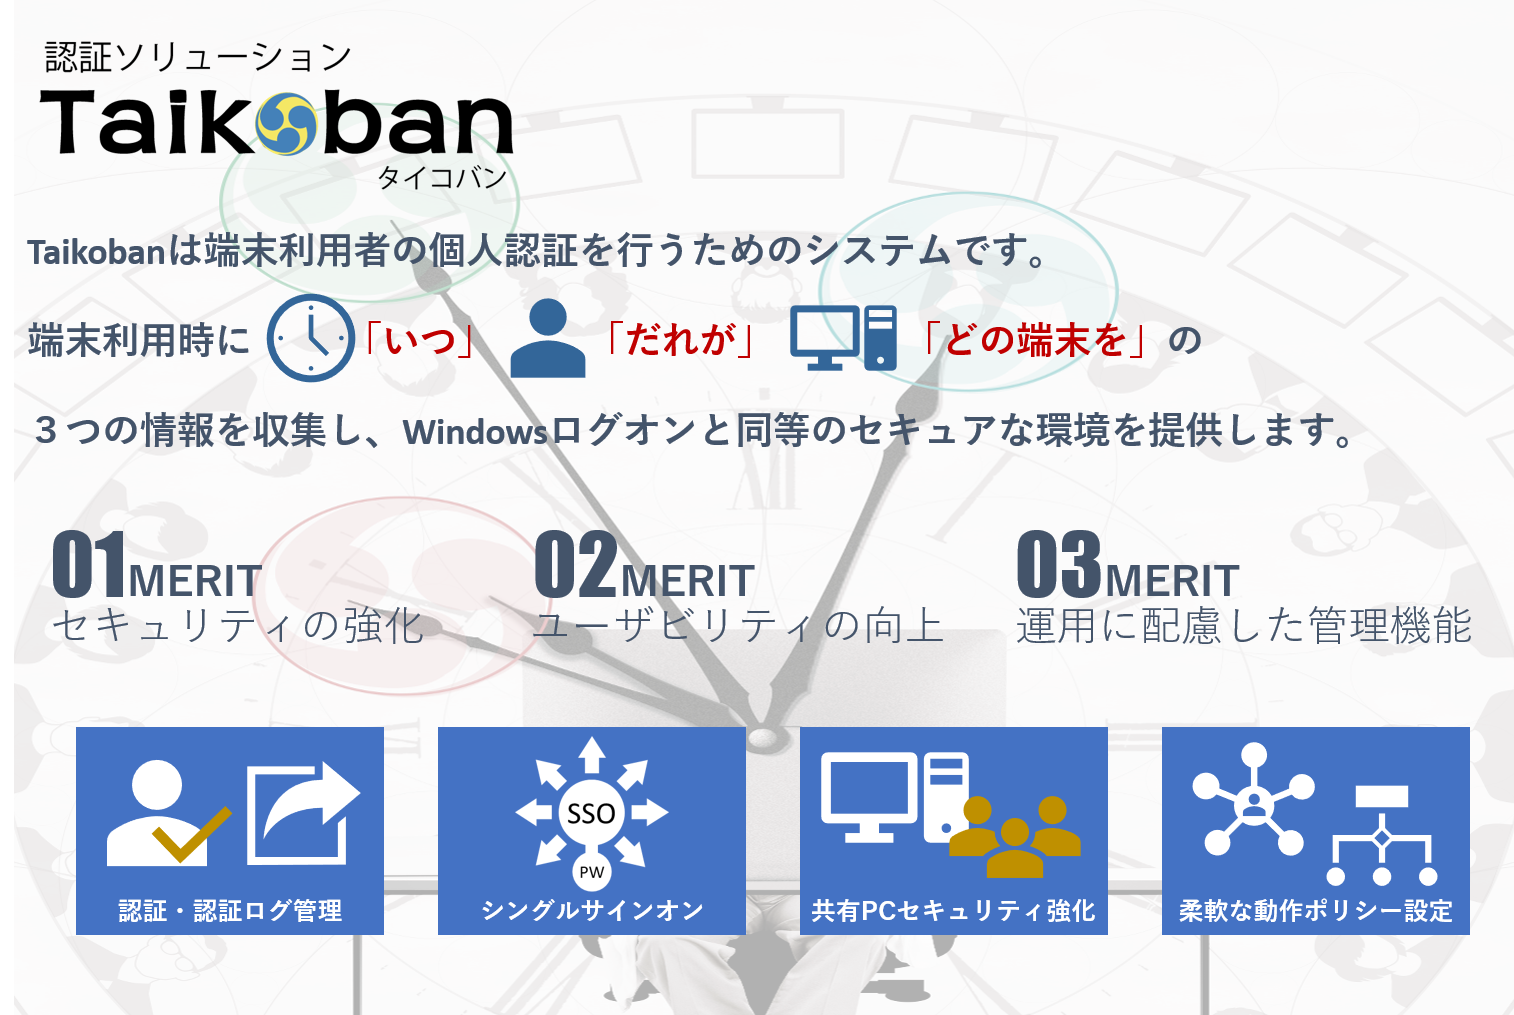 認証ソリューションTaikobanは端末利用者の個人認証を行うためのシステムです。